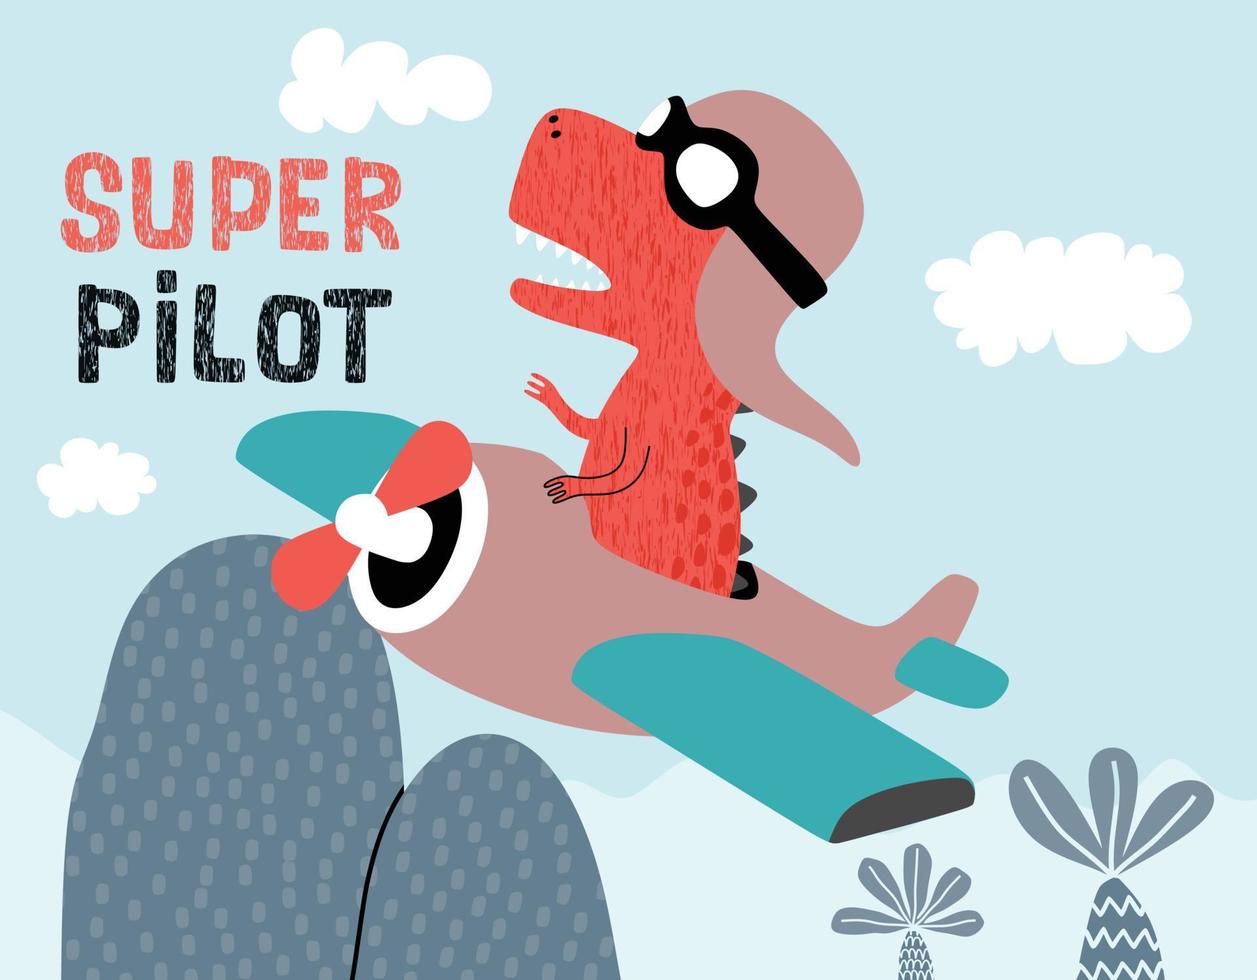 dinossauro fofo em um avião. ilustração em vetor dos desenhos animados.